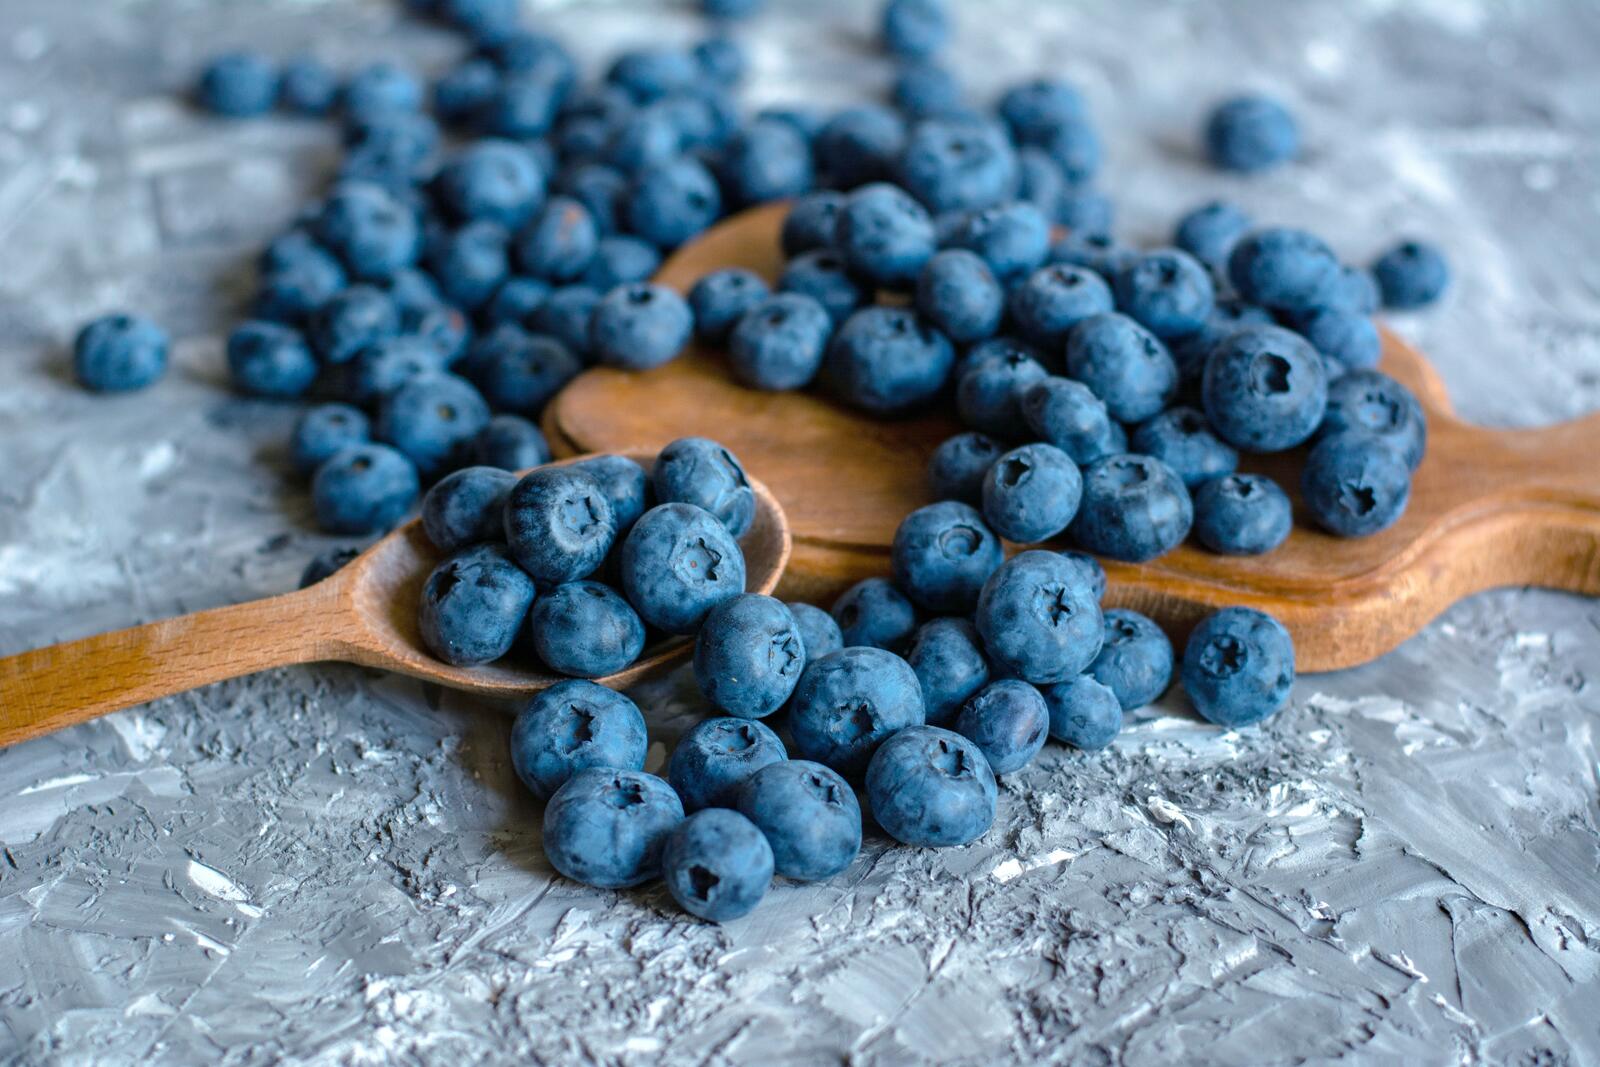 免费照片一张蓝莓散落在桌子上的照片。